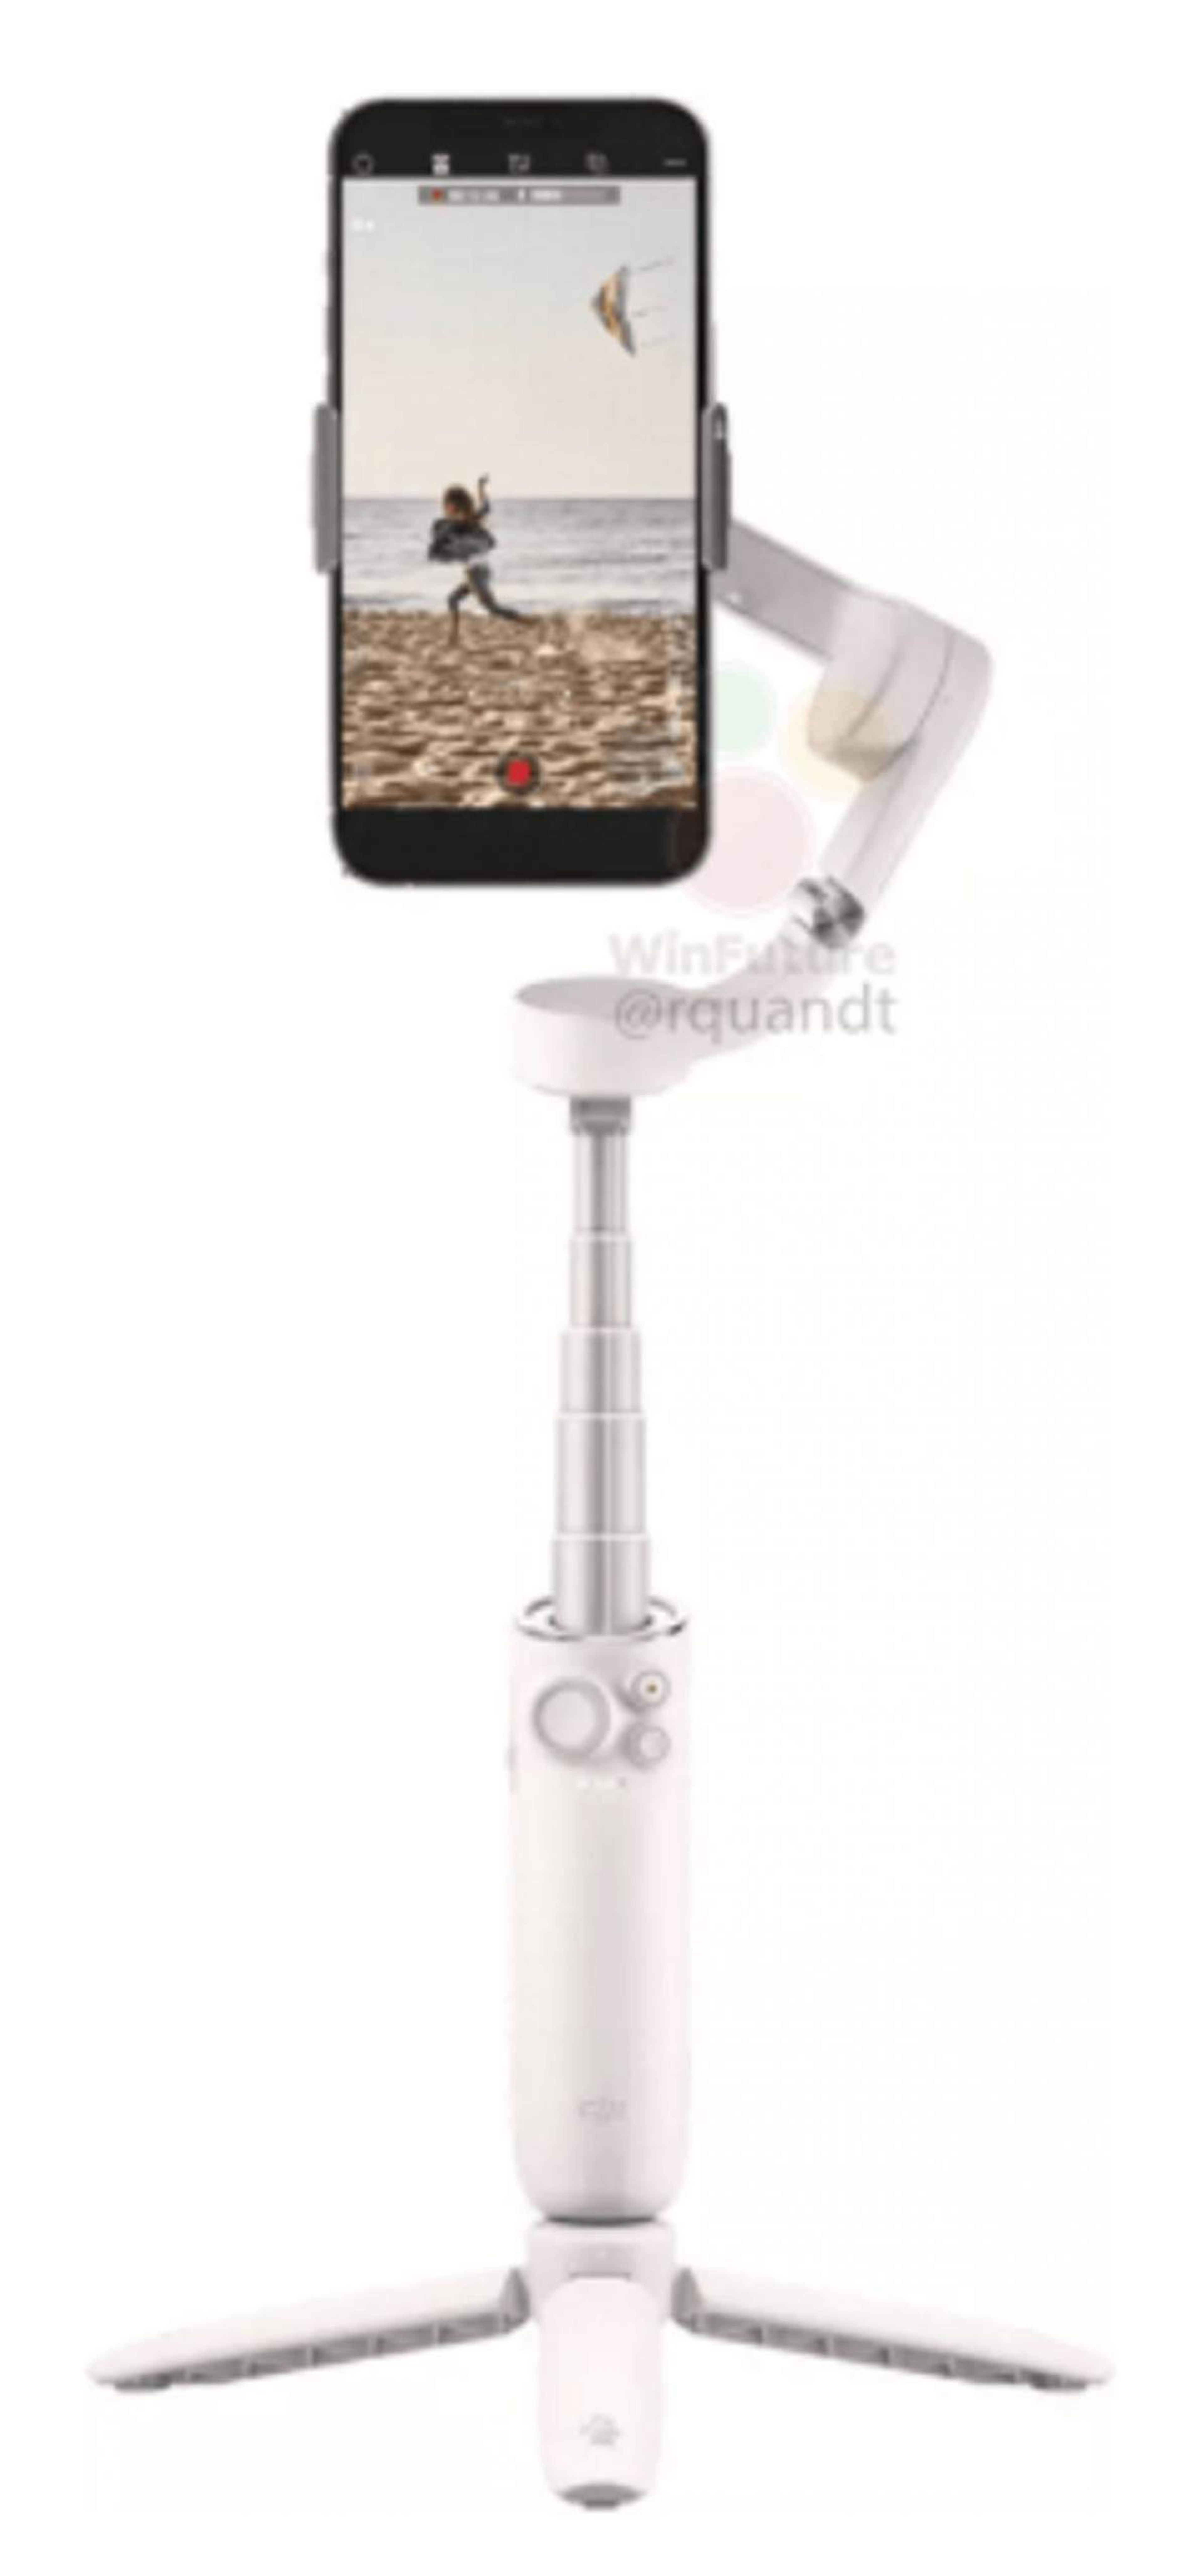 DJI OM5, estabilizador para el móvil que combina un palo selfie y un gimbal